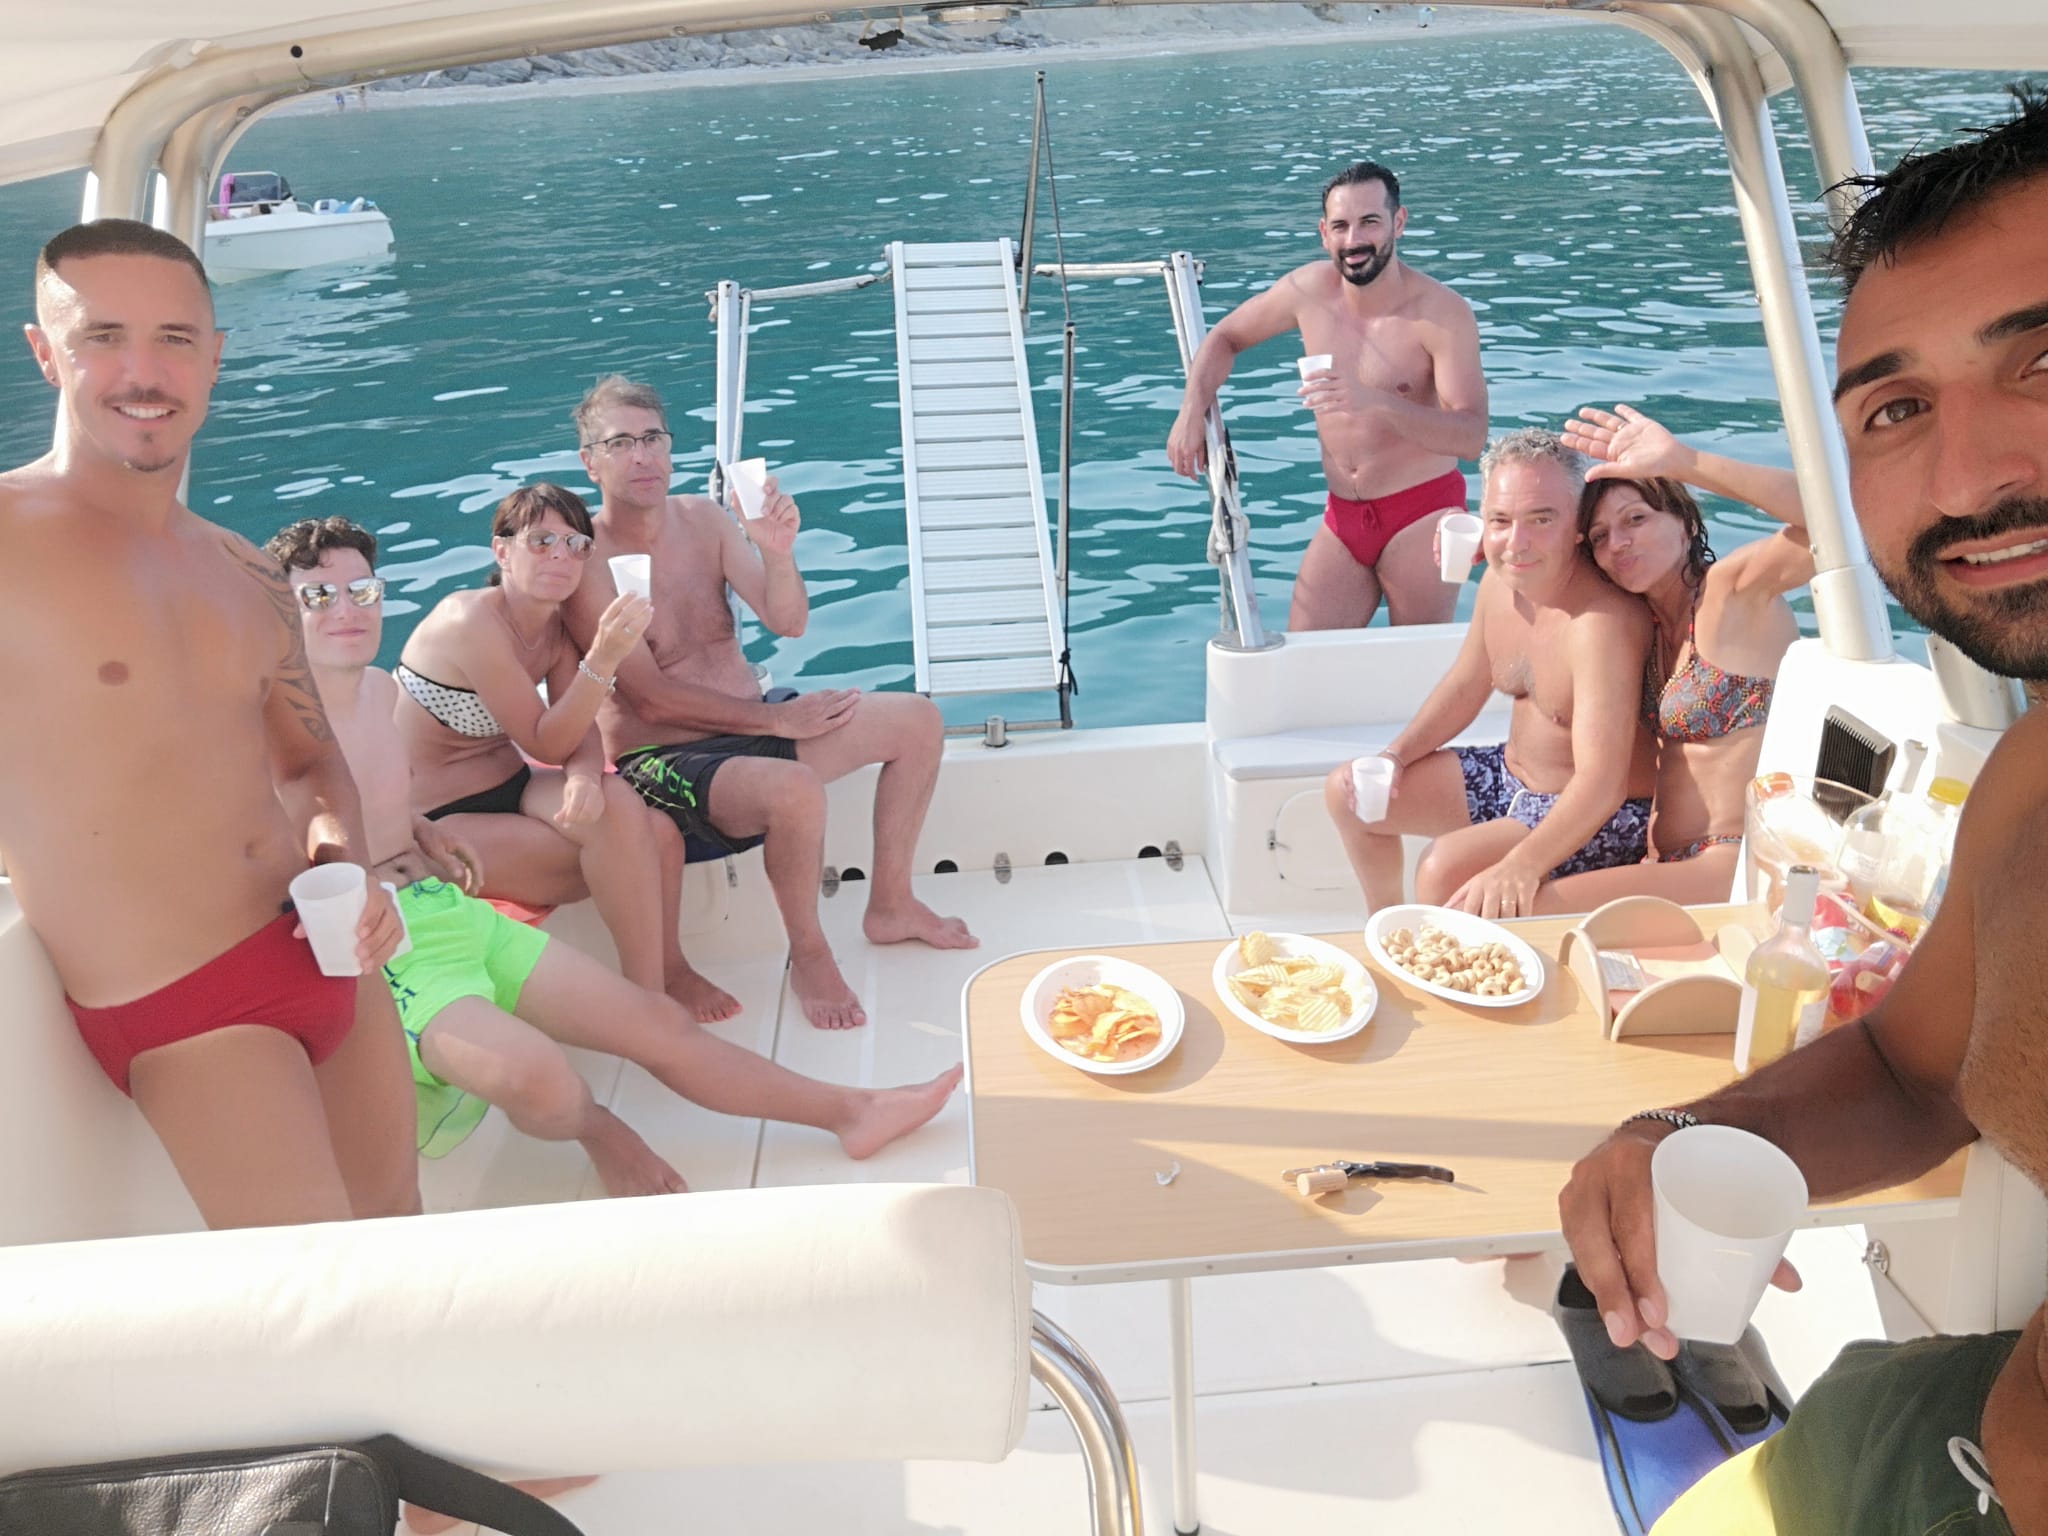 Gita in barca riviera del conero bellezza marche adriatico paesaggi esperienza brezza marina gruppi famiglia esperti marinai numana porto ancona marche 